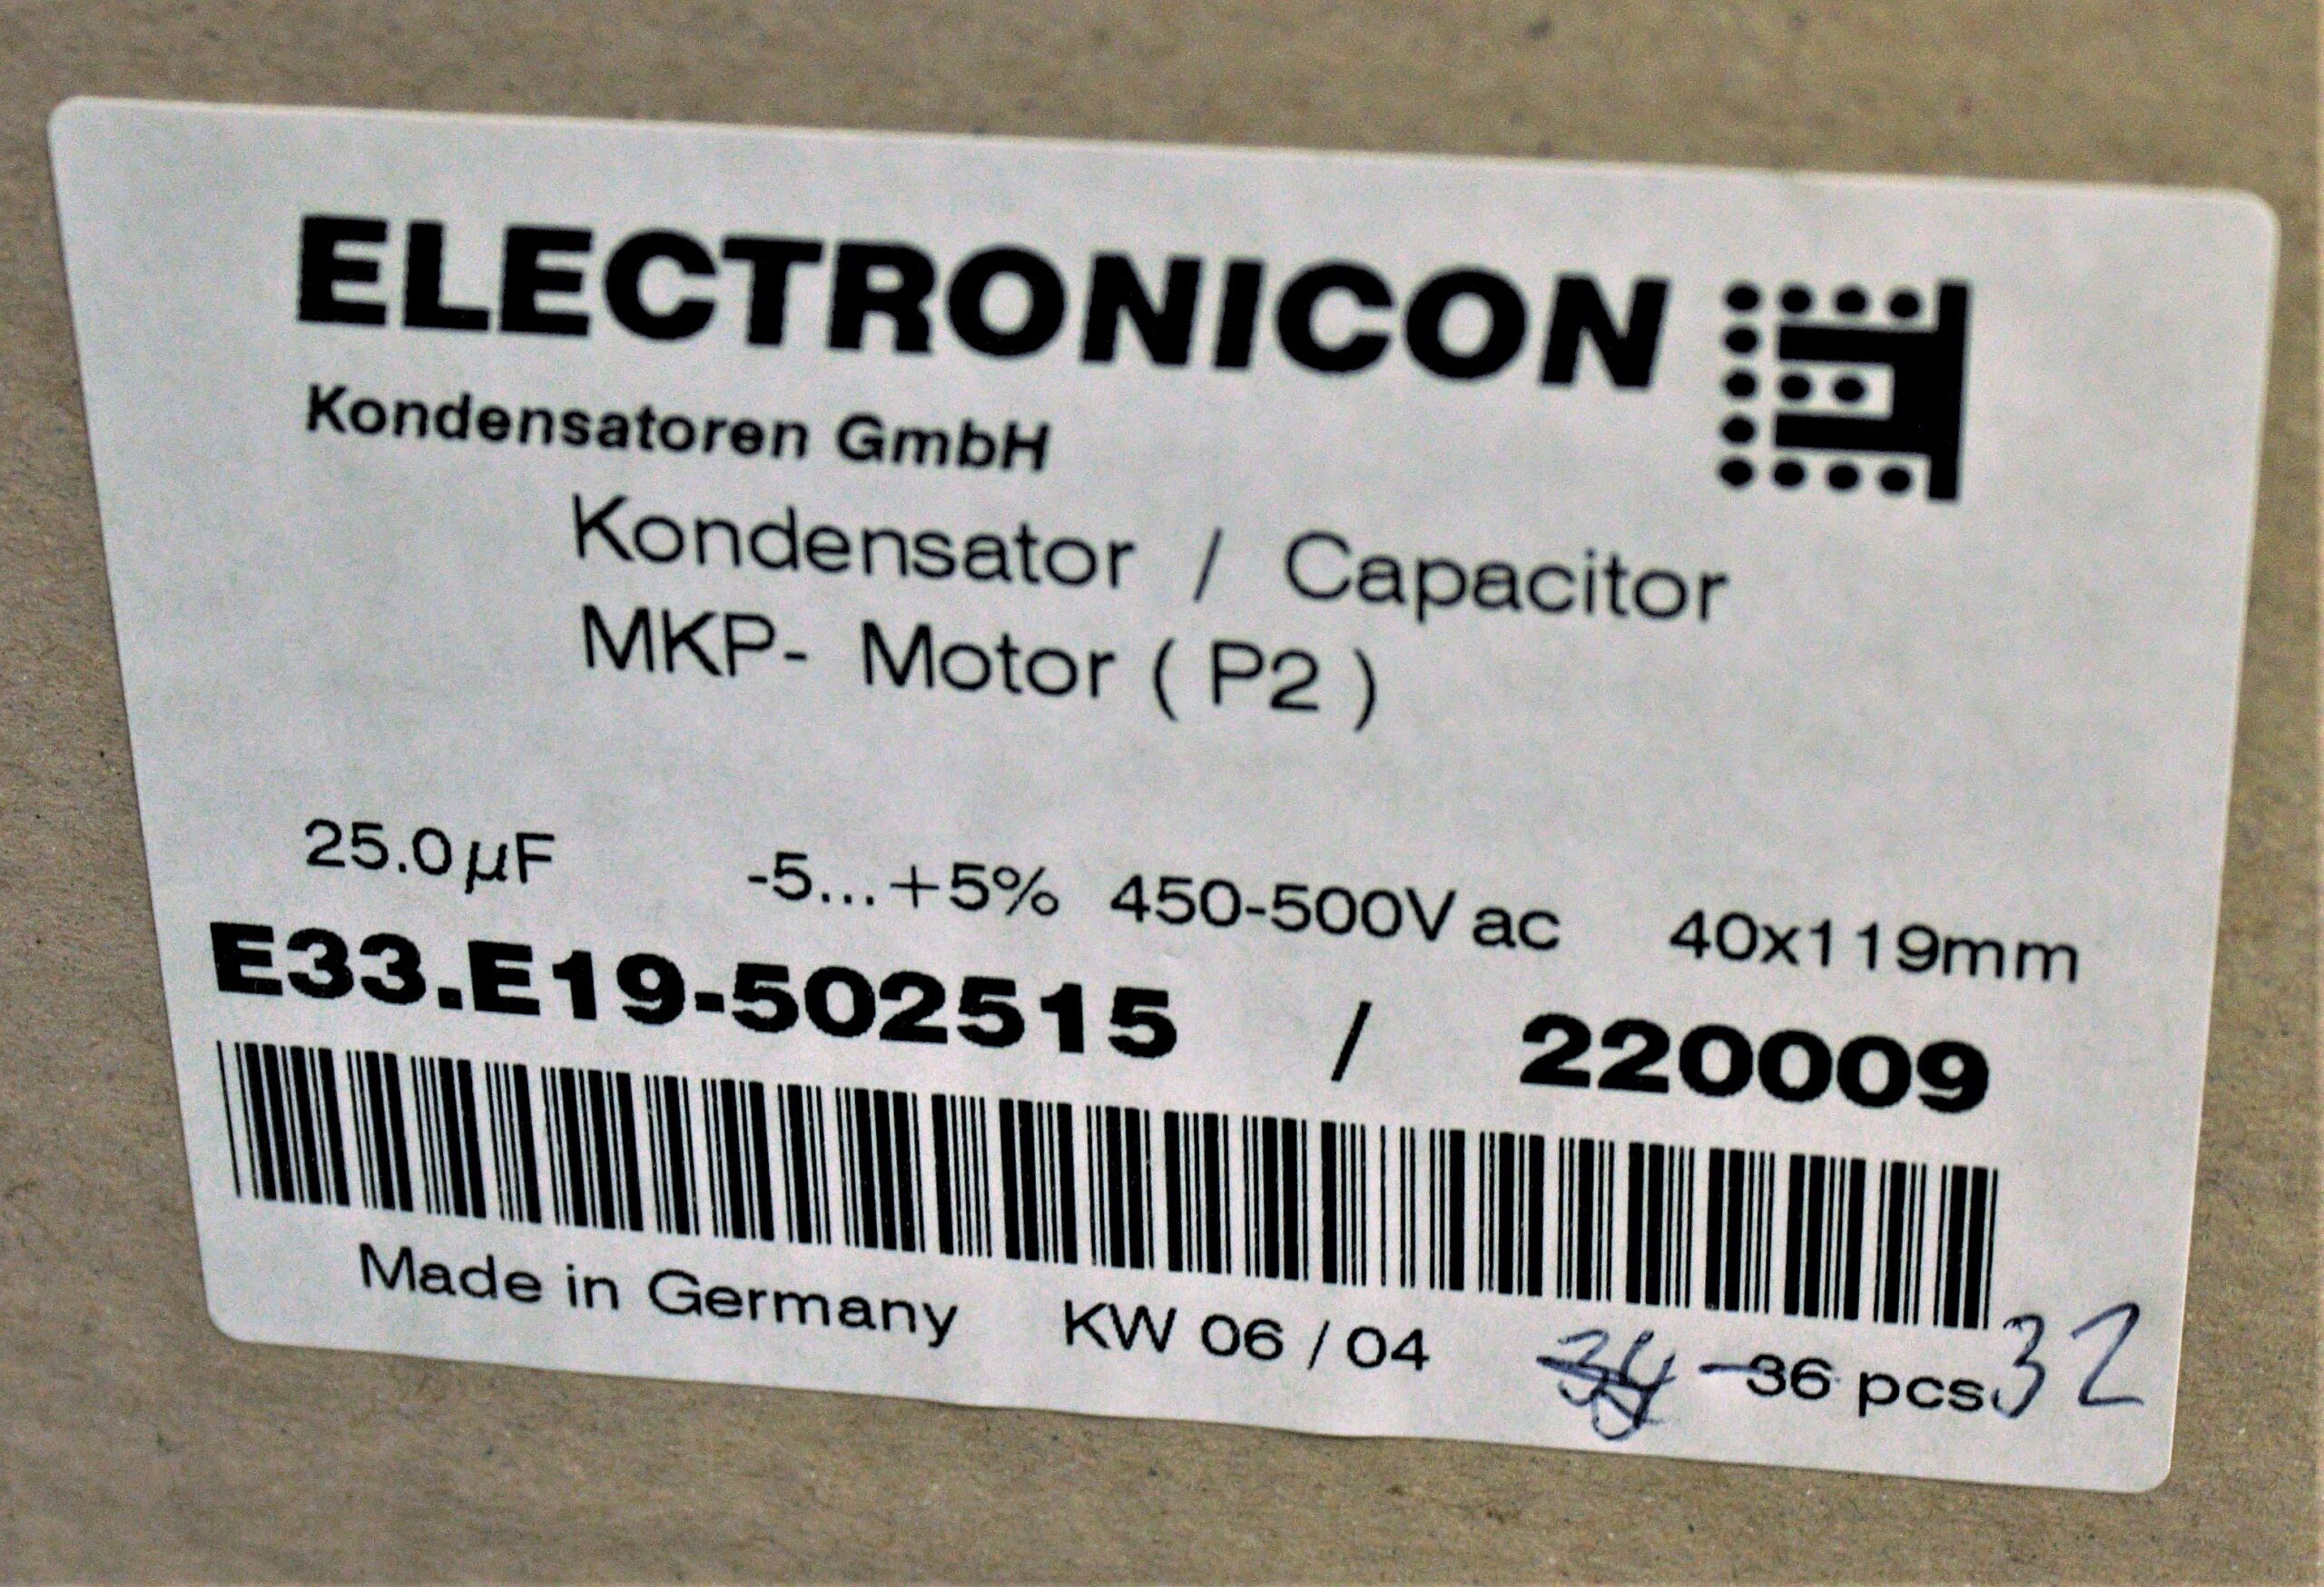 Electronicon Capacitor E33.E19-502515/220009 25.0uF 450-500 V ac -5+5% -  UPE Inc.